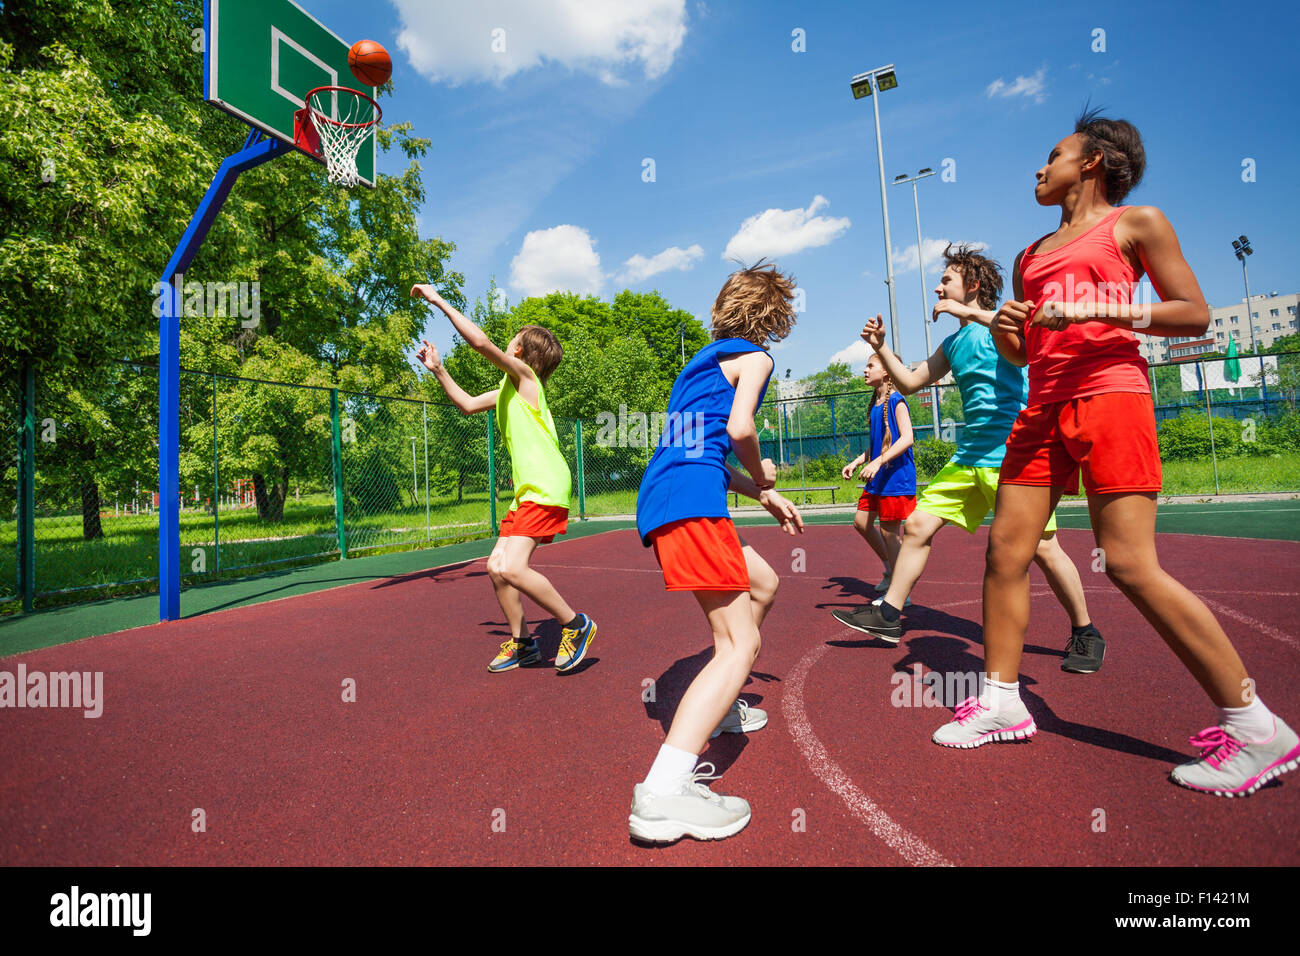 Les adolescents en uniformes colorés jouant au basket-ball Banque D'Images